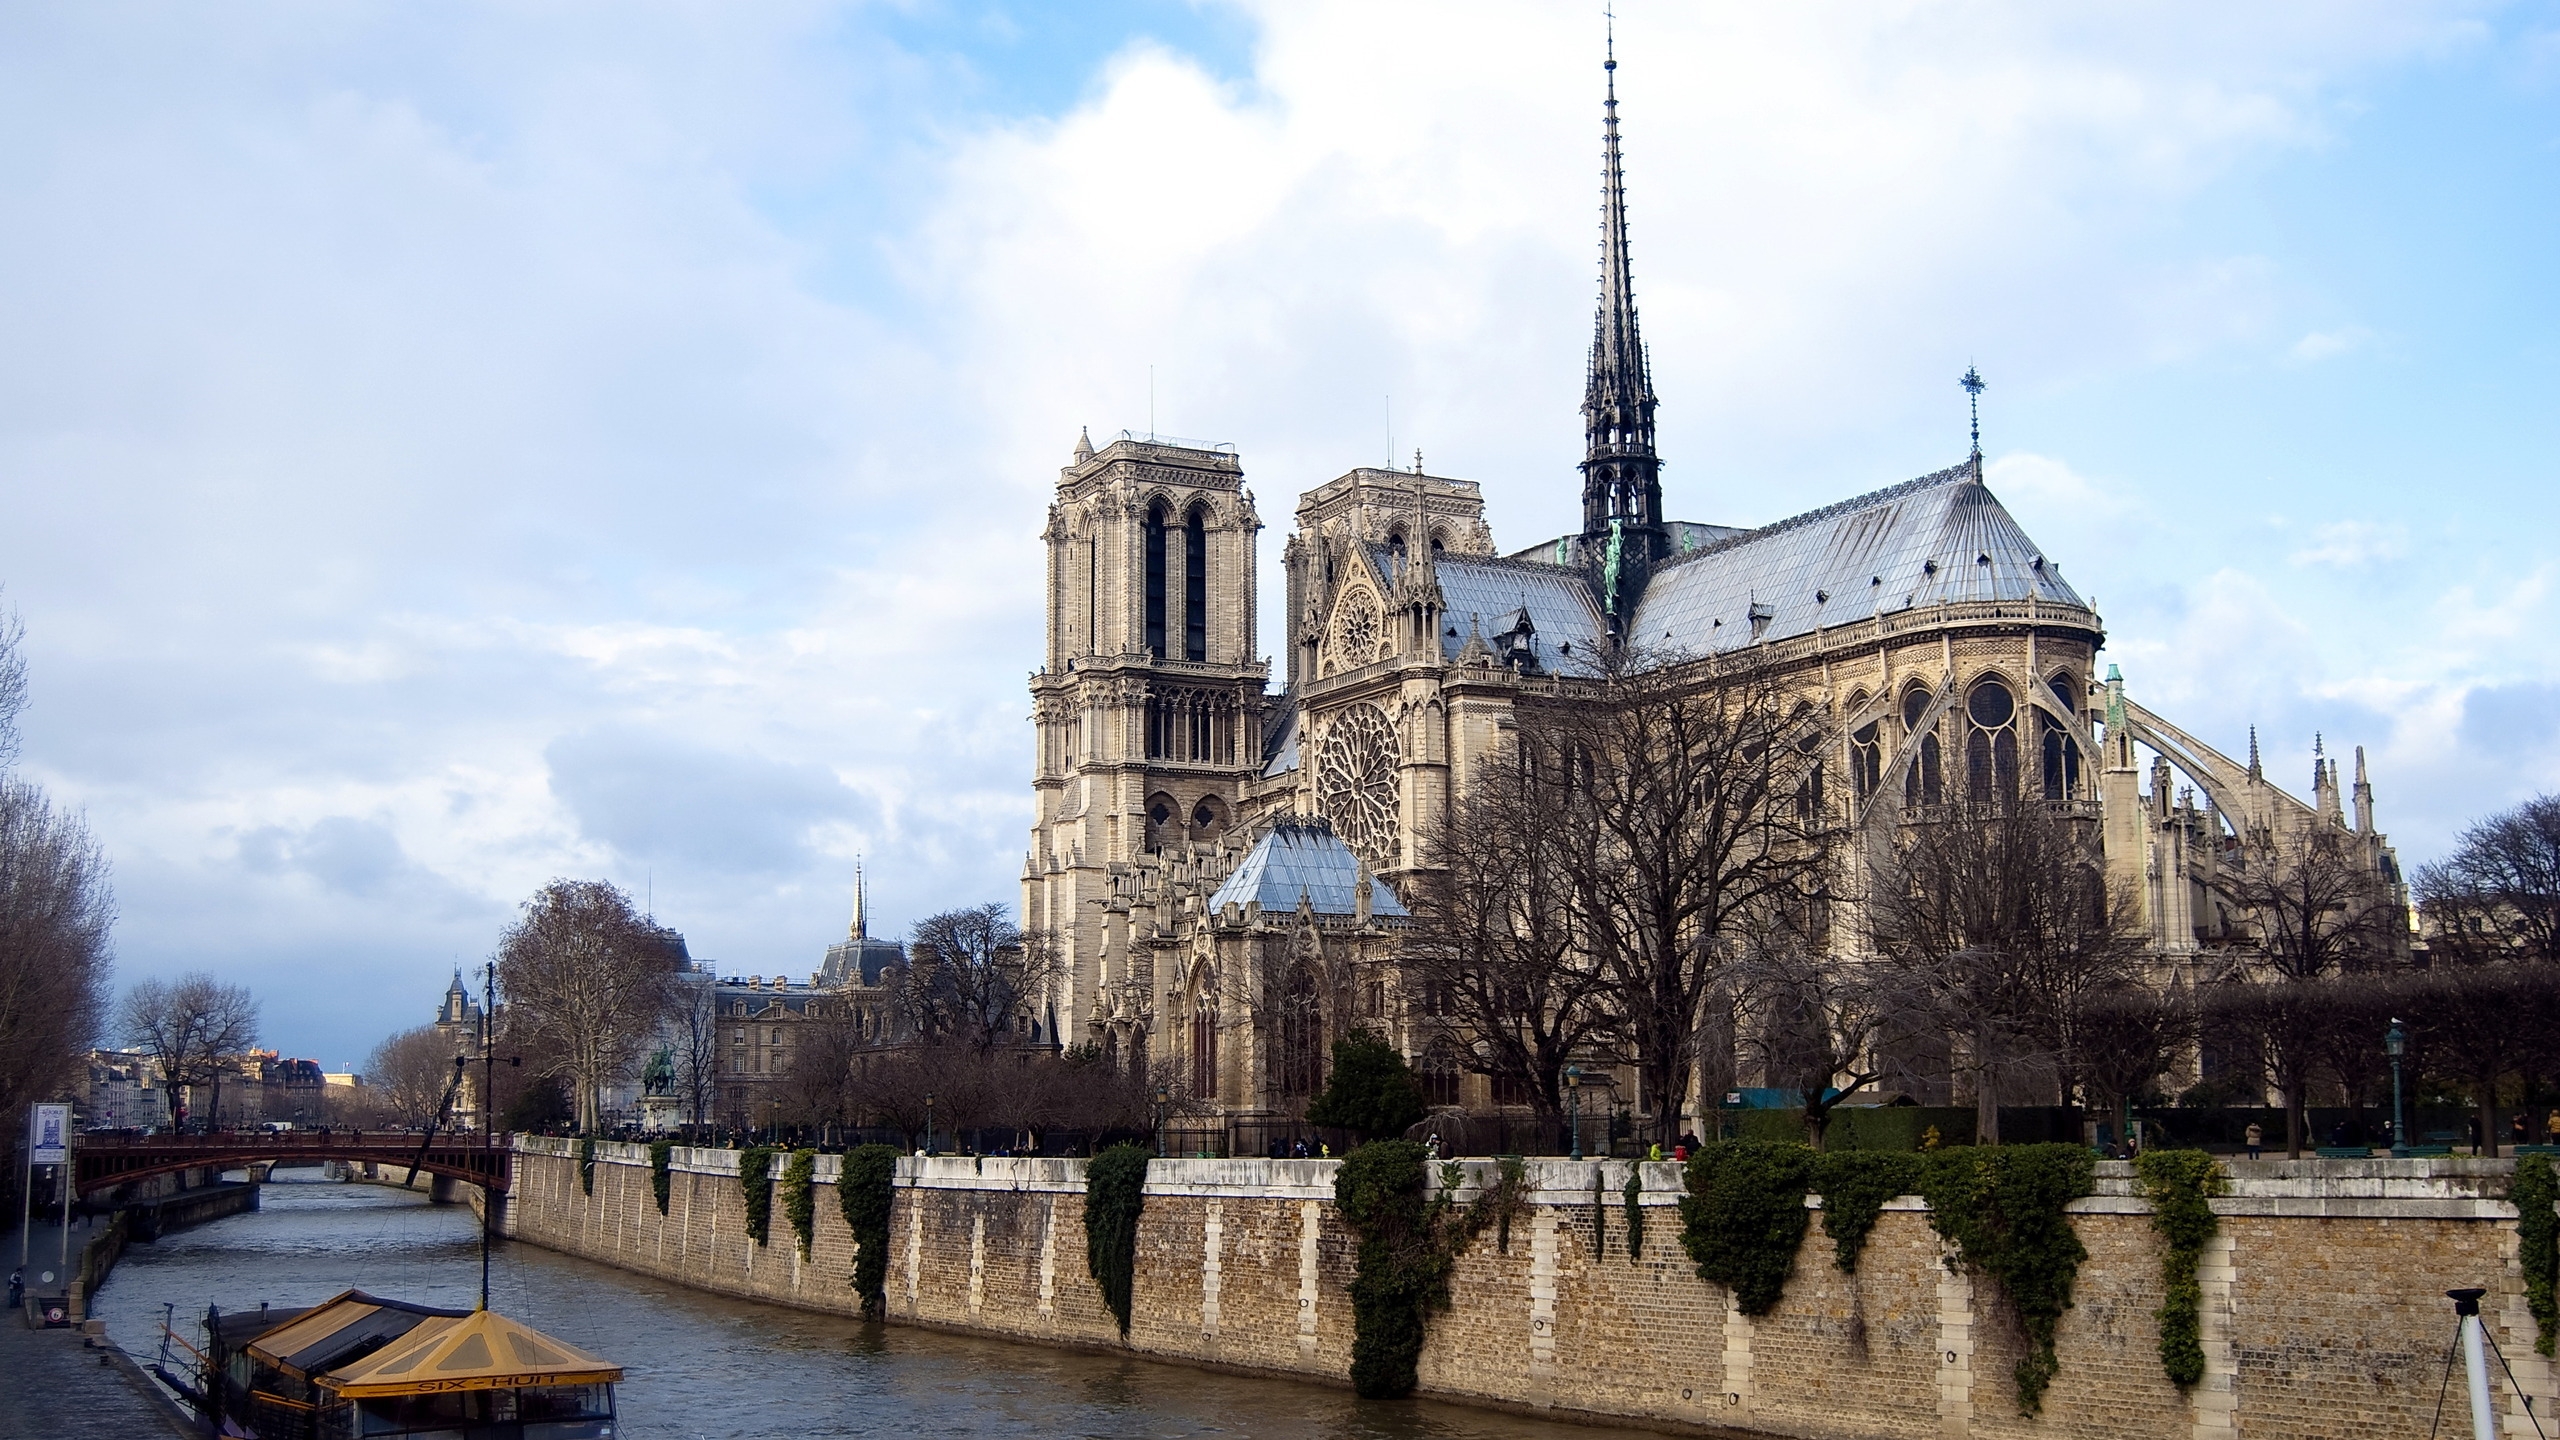 Notre Dame de Paris for 2560x1440 HDTV resolution